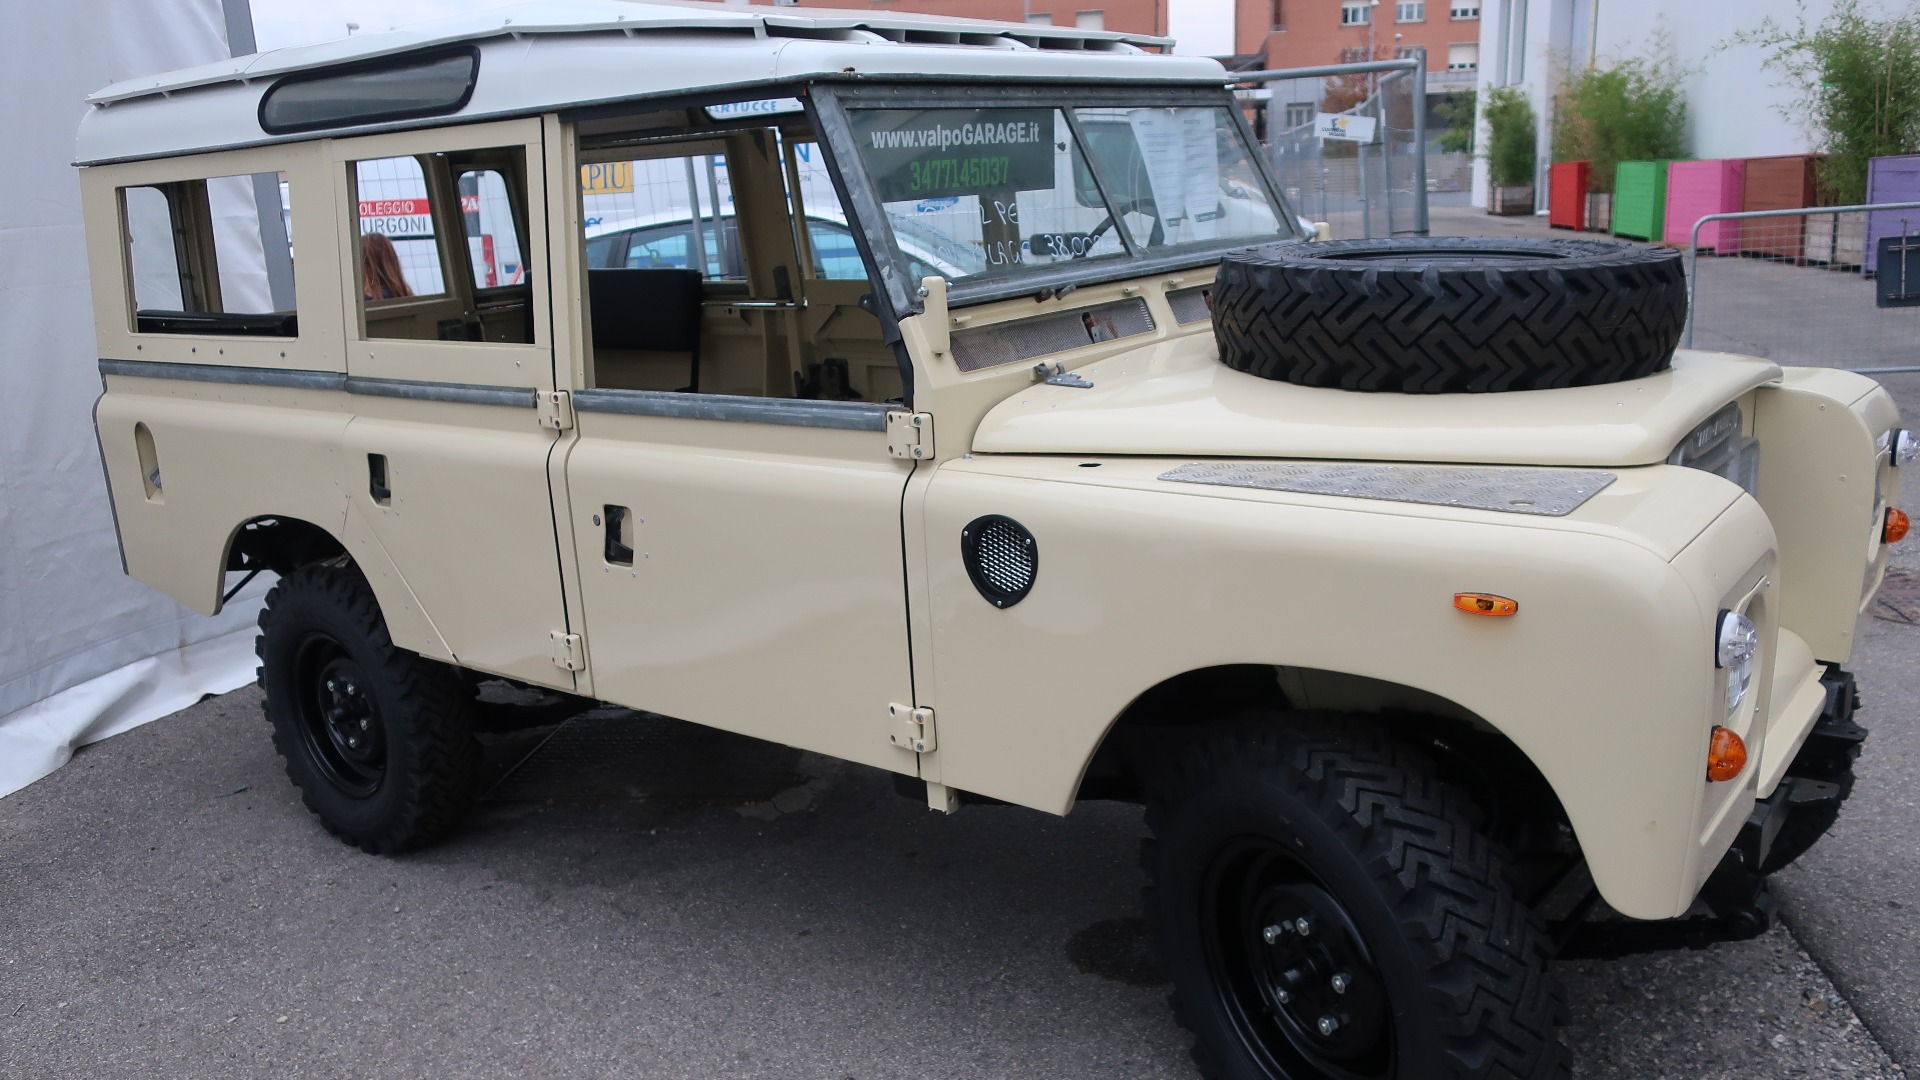 1977 Land Rover 109 til salgs for 38.000 Euro som påbegynt restaureringsprosjekt.